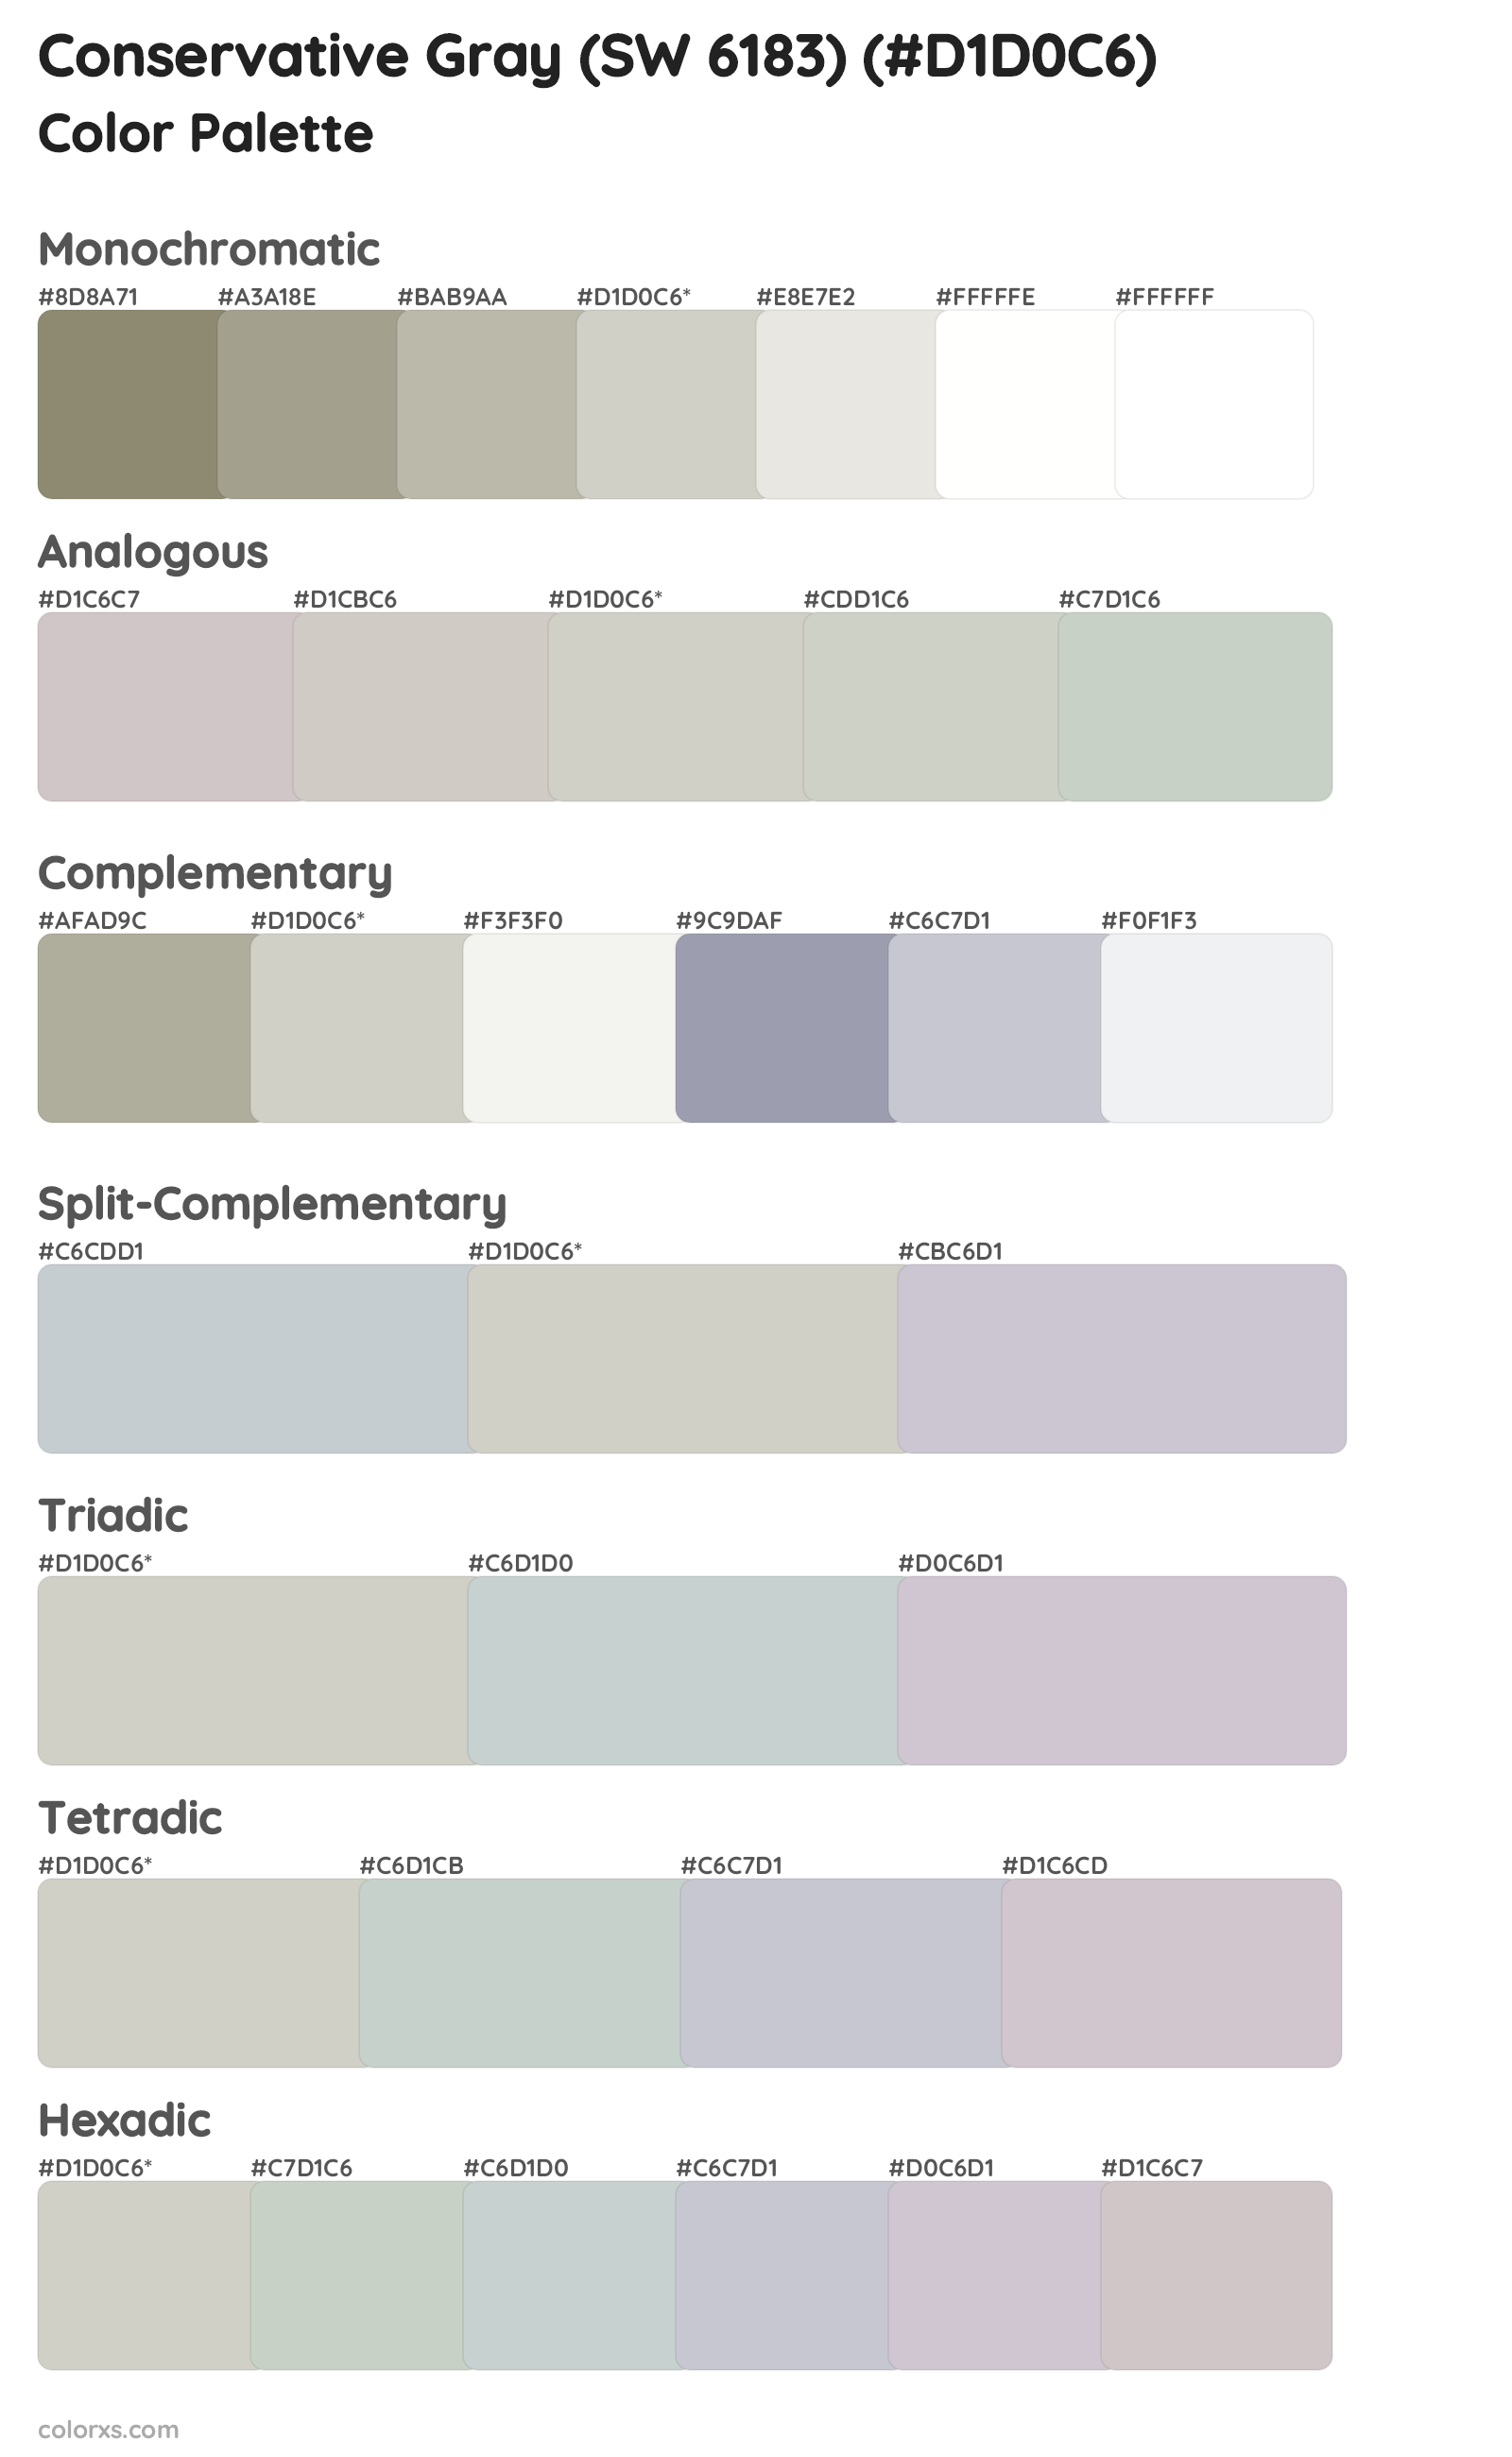 Conservative Gray (SW 6183) Color Scheme Palettes